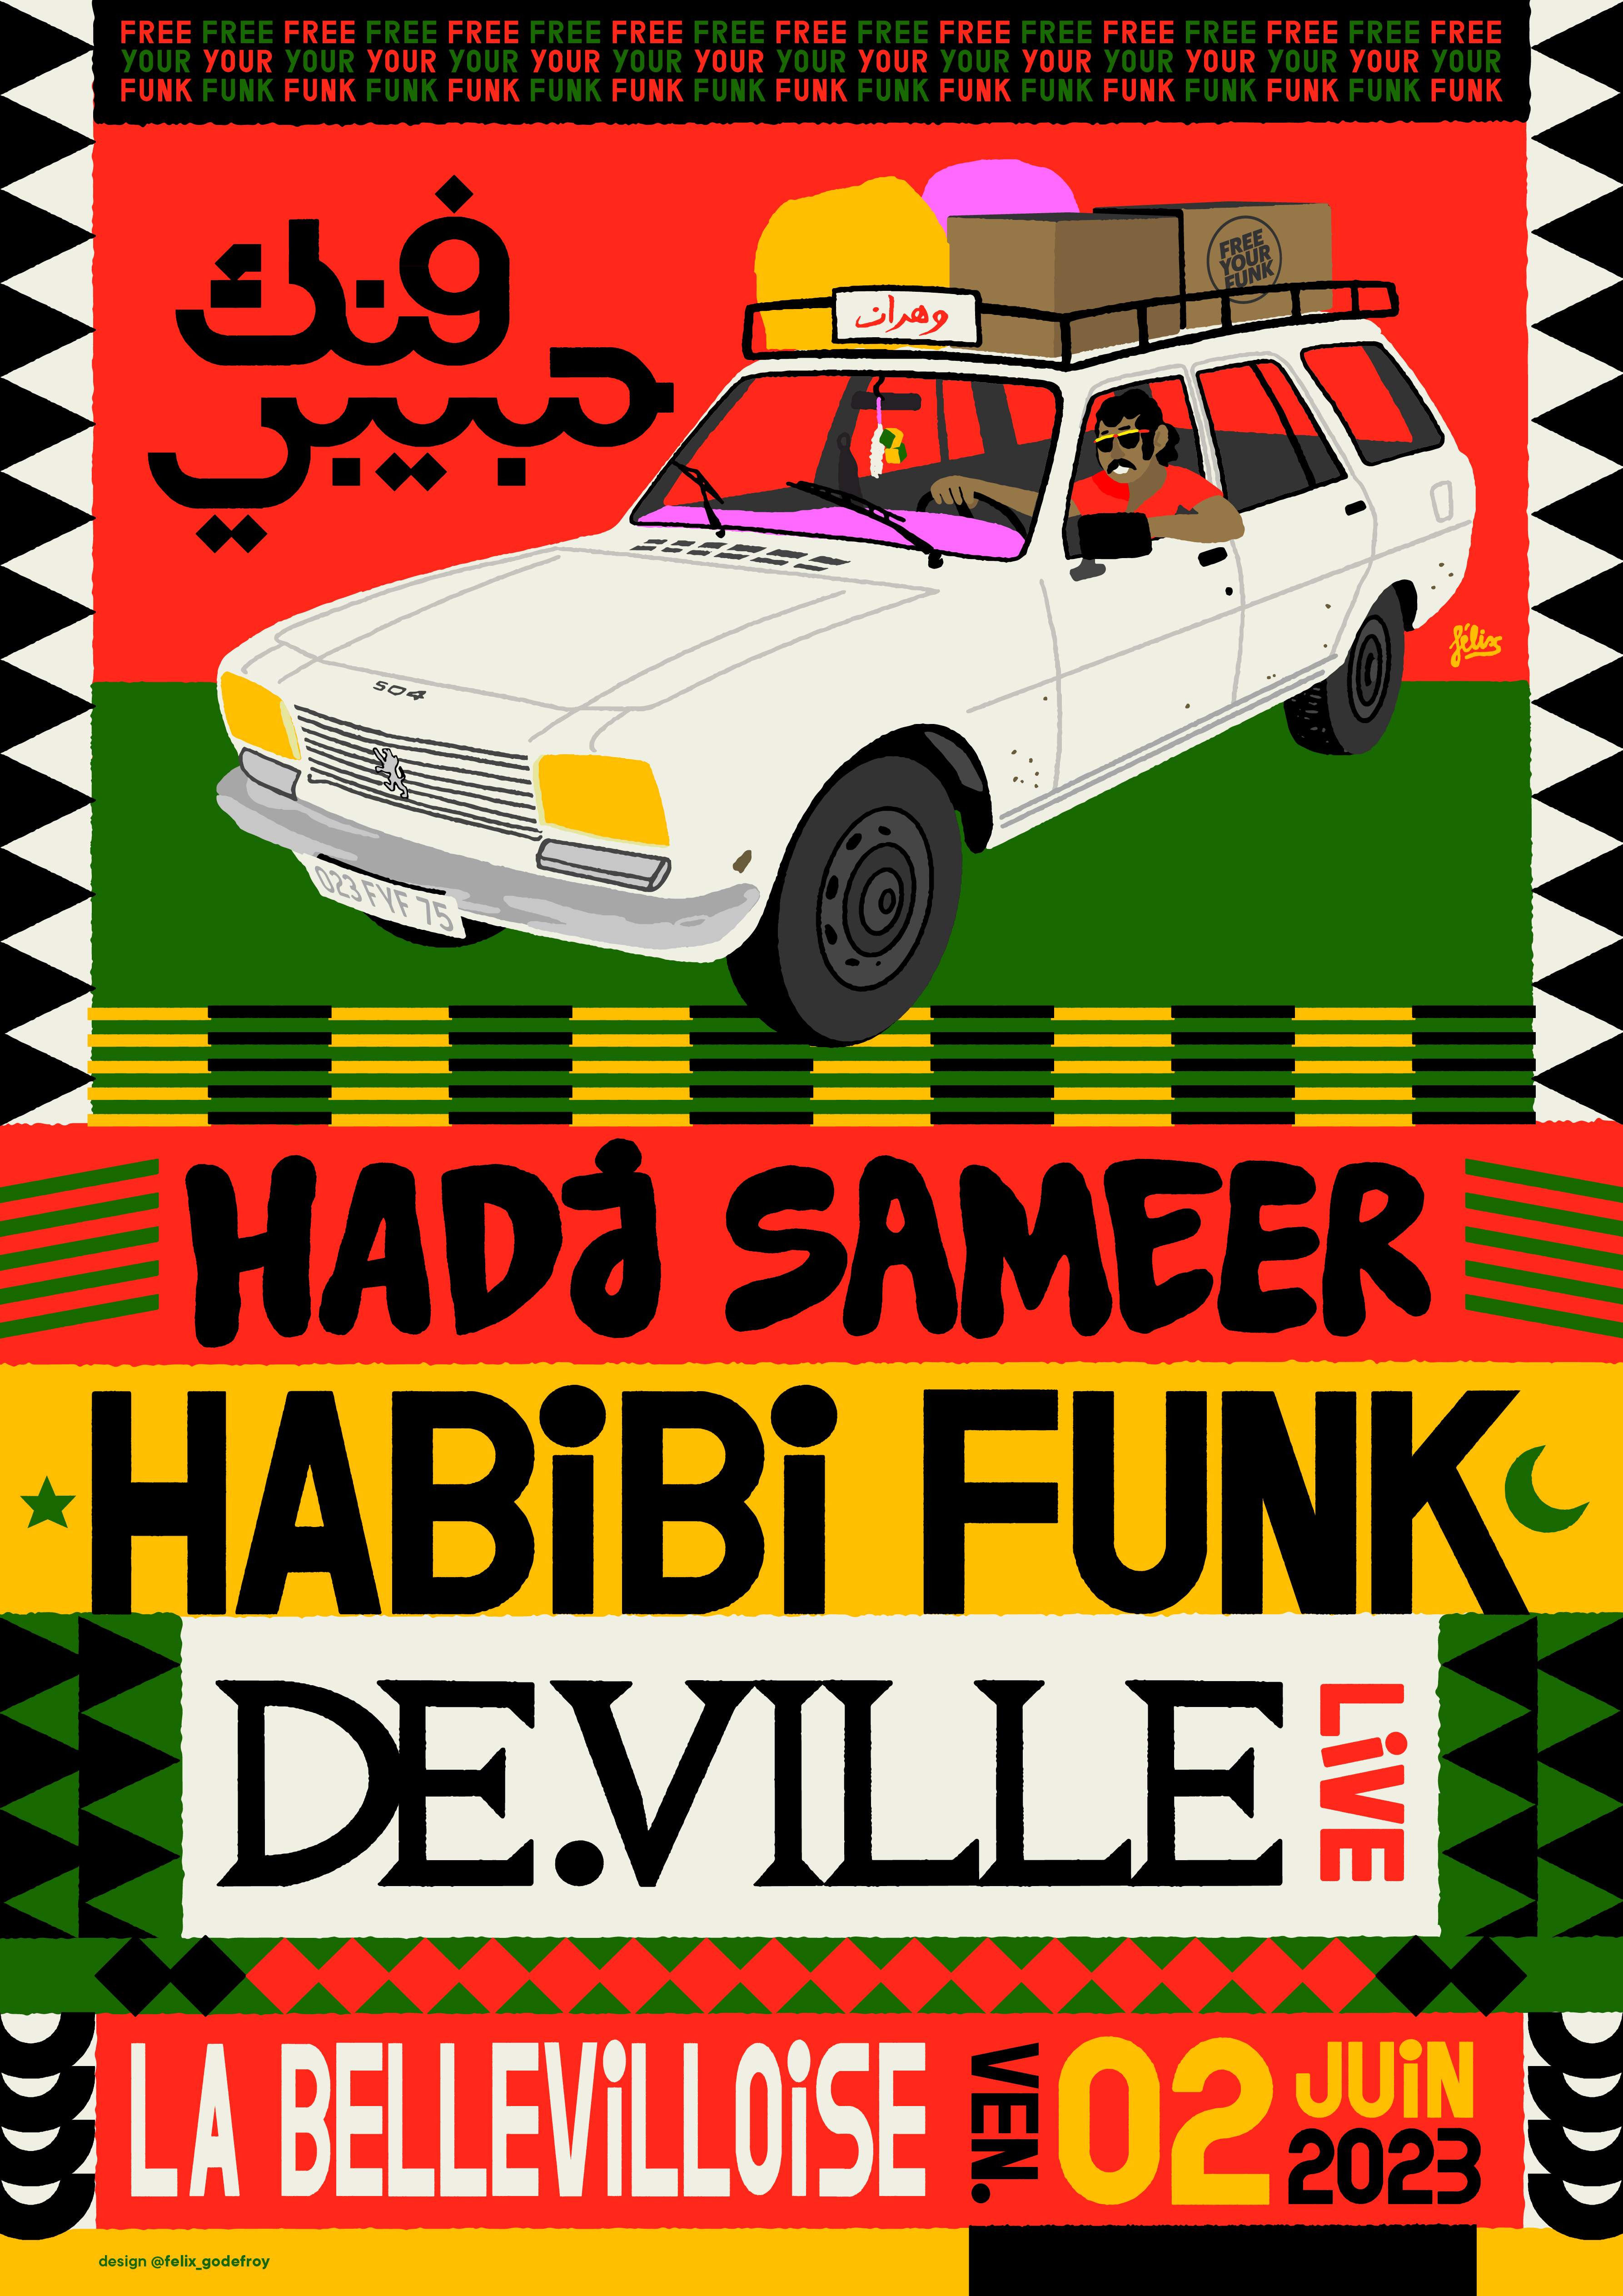 Free Your Funk: Habibi Funk, Hadj Sameer, De.Ville (live) - フライヤー表